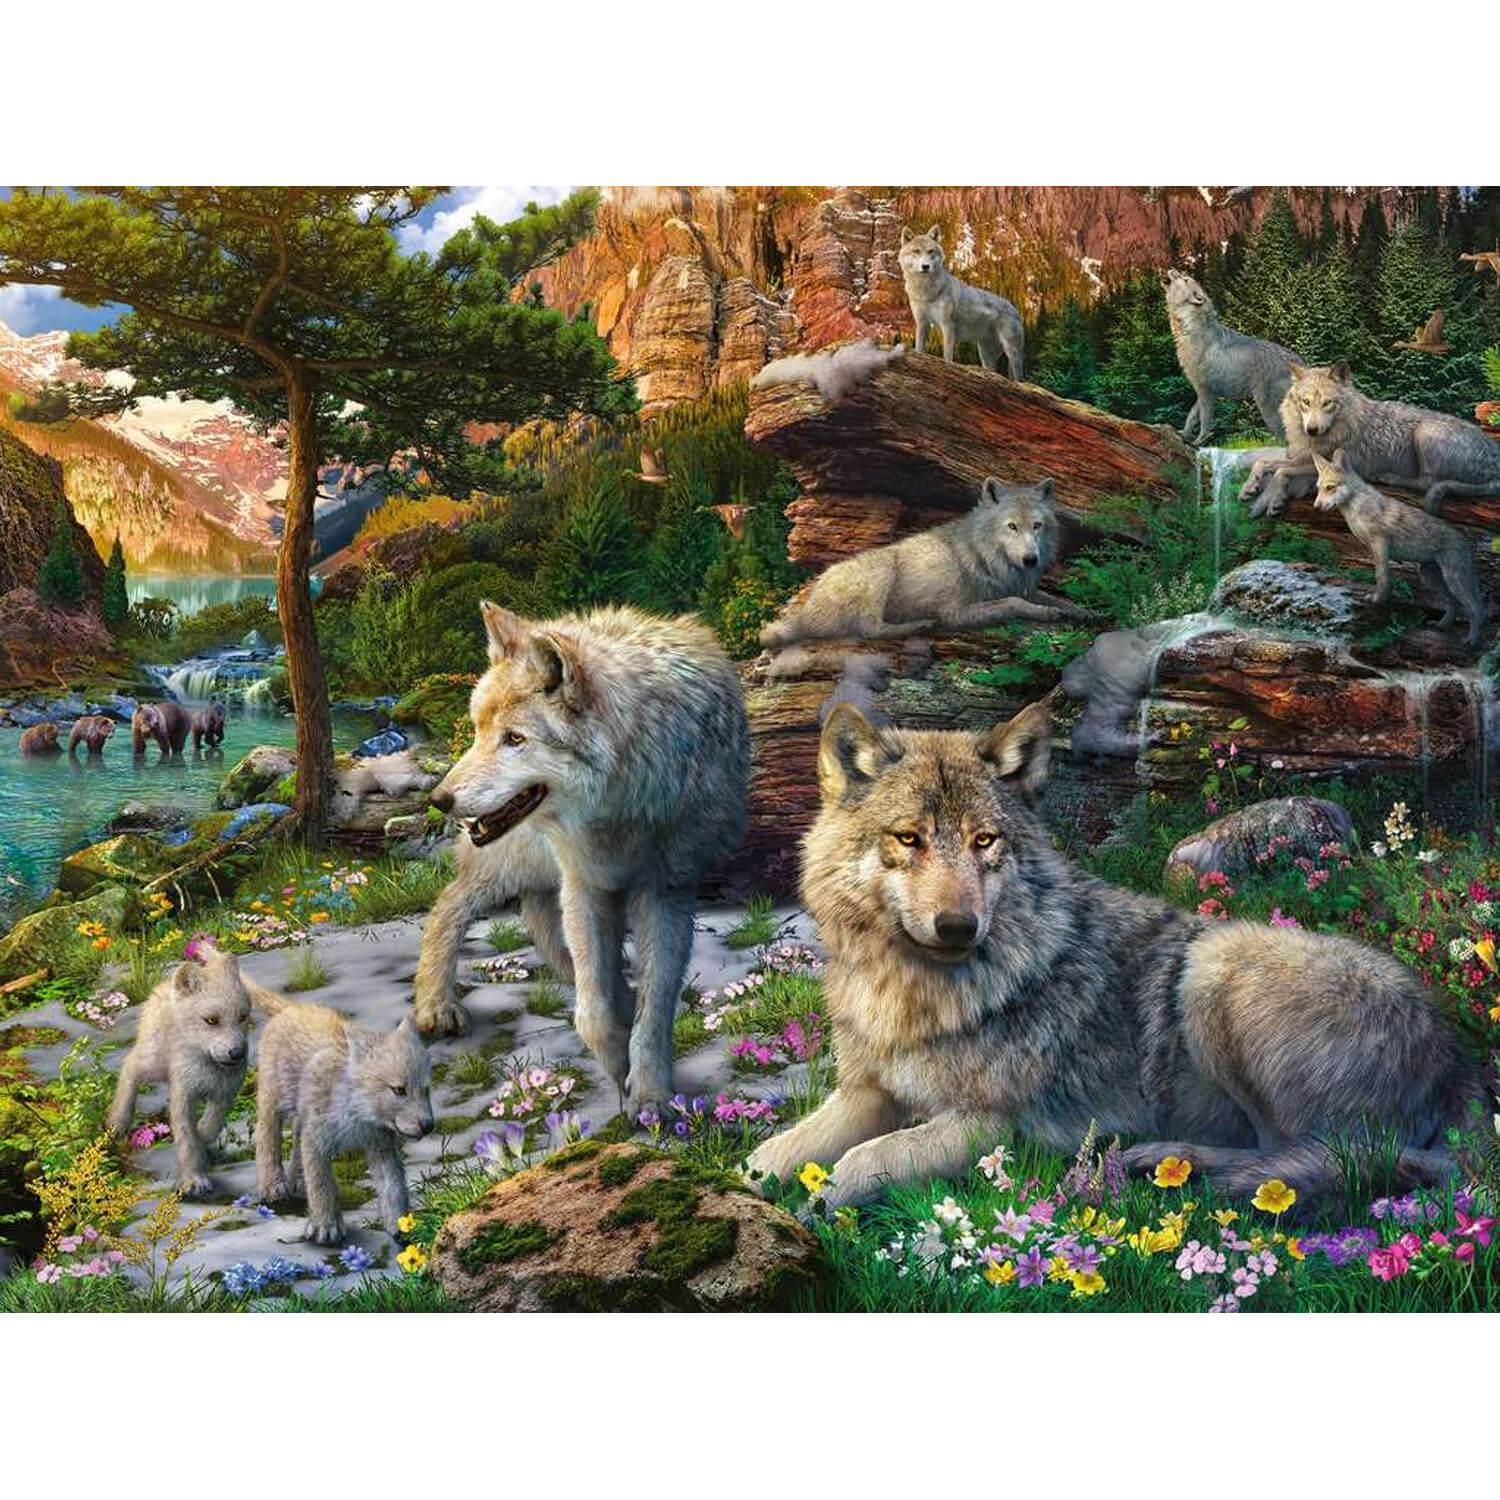 Puzzle Castorland Loup dans la nature Puzzle 1500 pièces